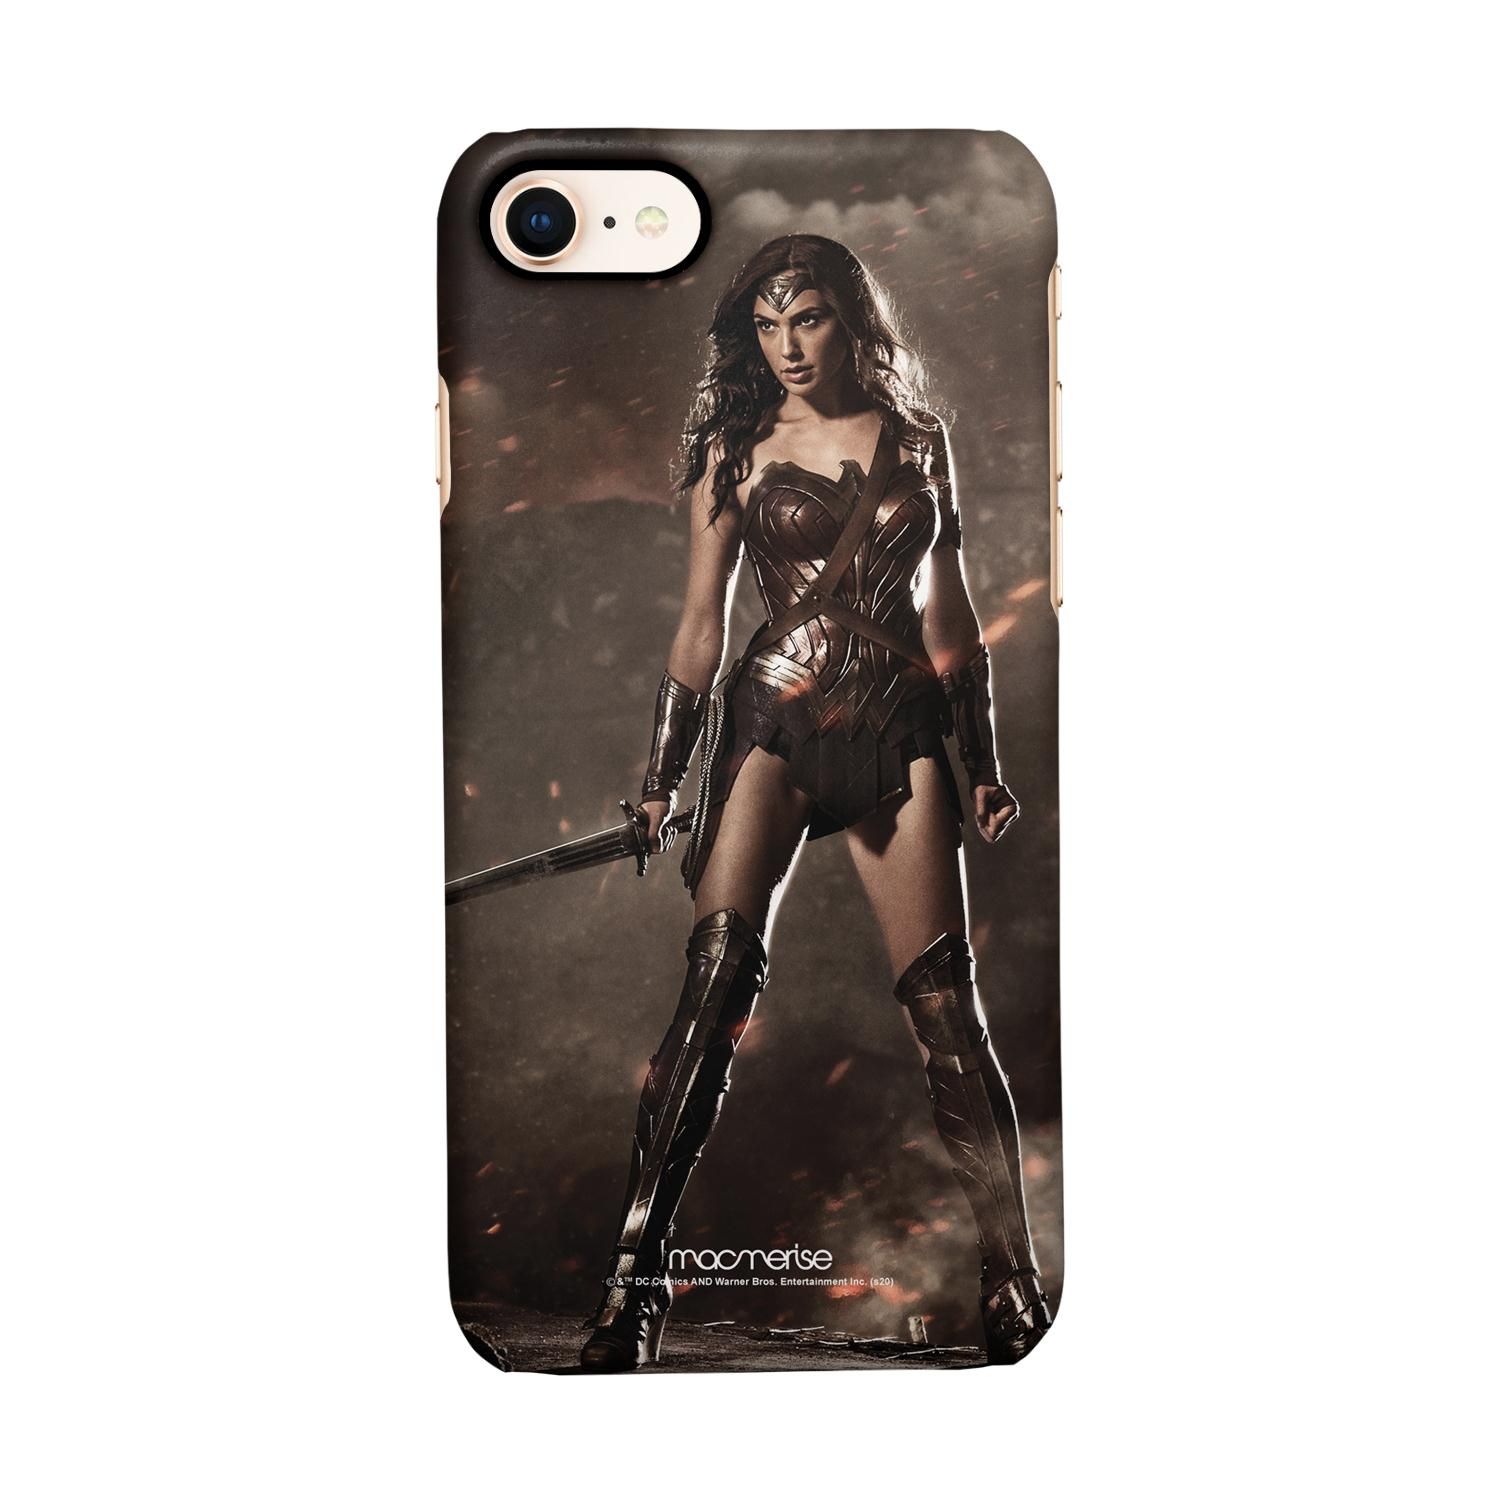 Buy Lethal Wonderwoman - Sleek Phone Case for iPhone 8 Online